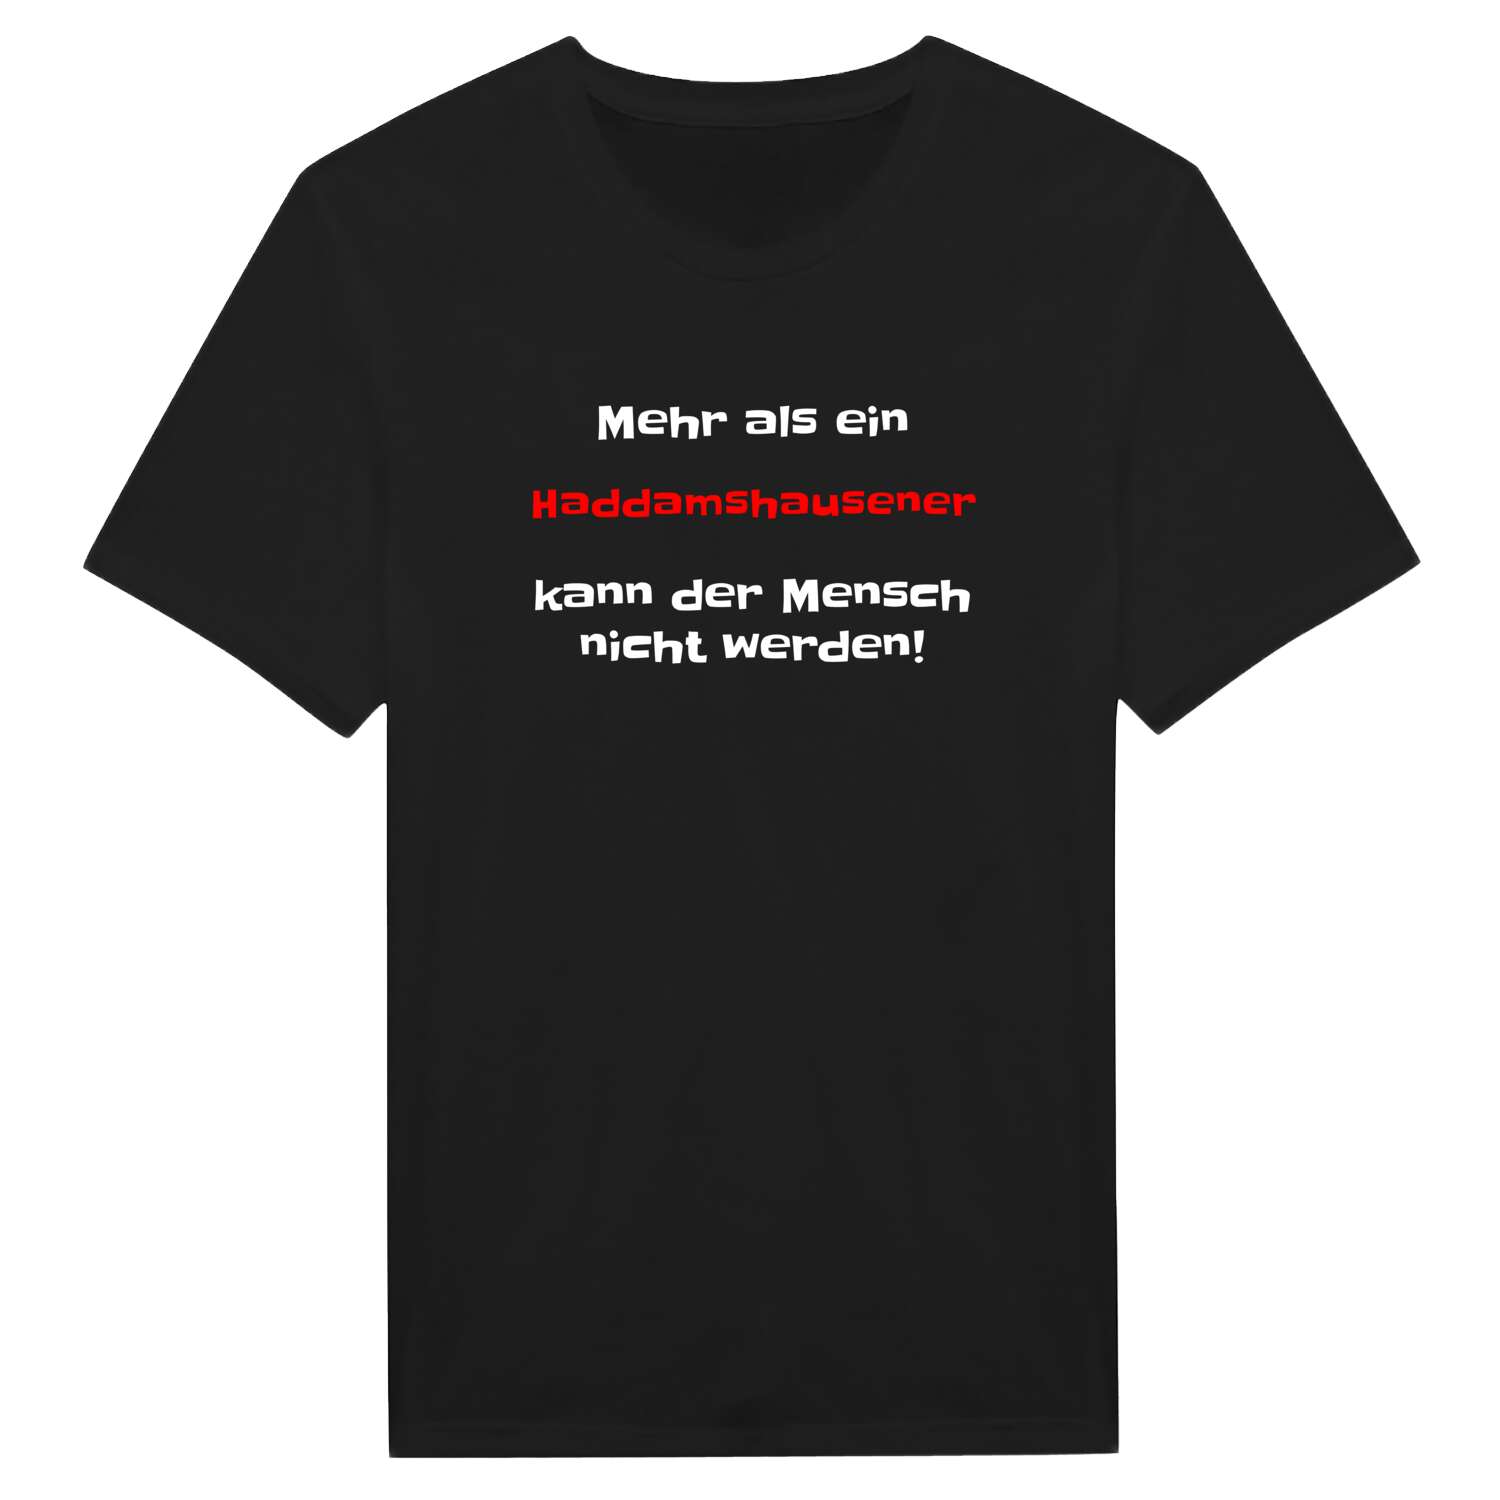 Haddamshausen T-Shirt »Mehr als ein«